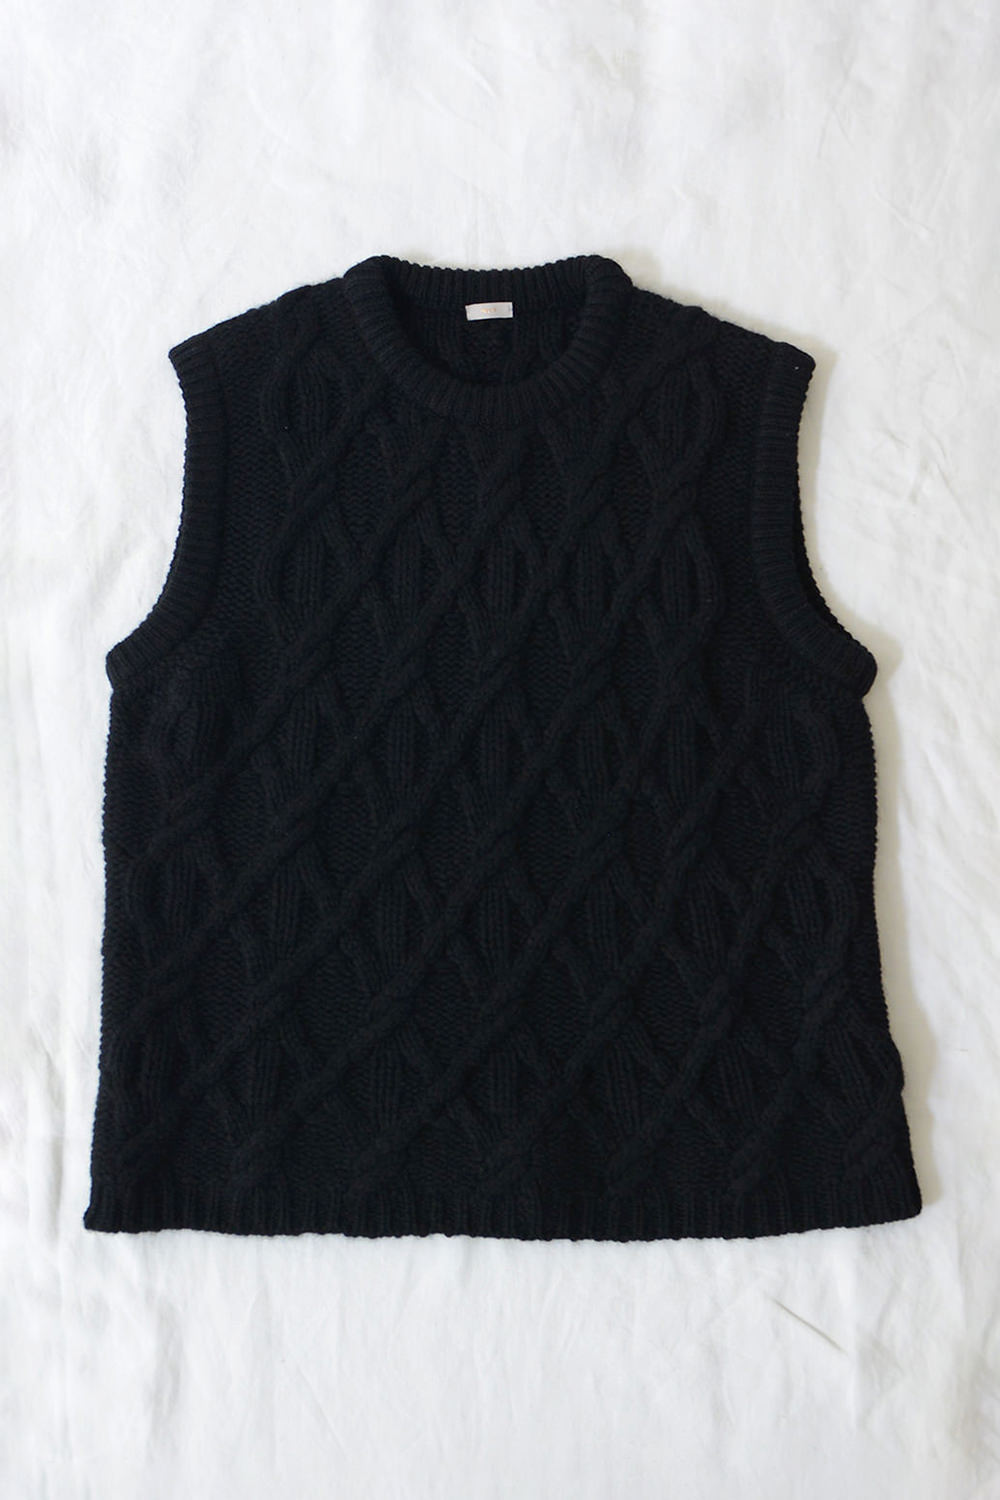 makie cashmere cable knit vest black a top picture